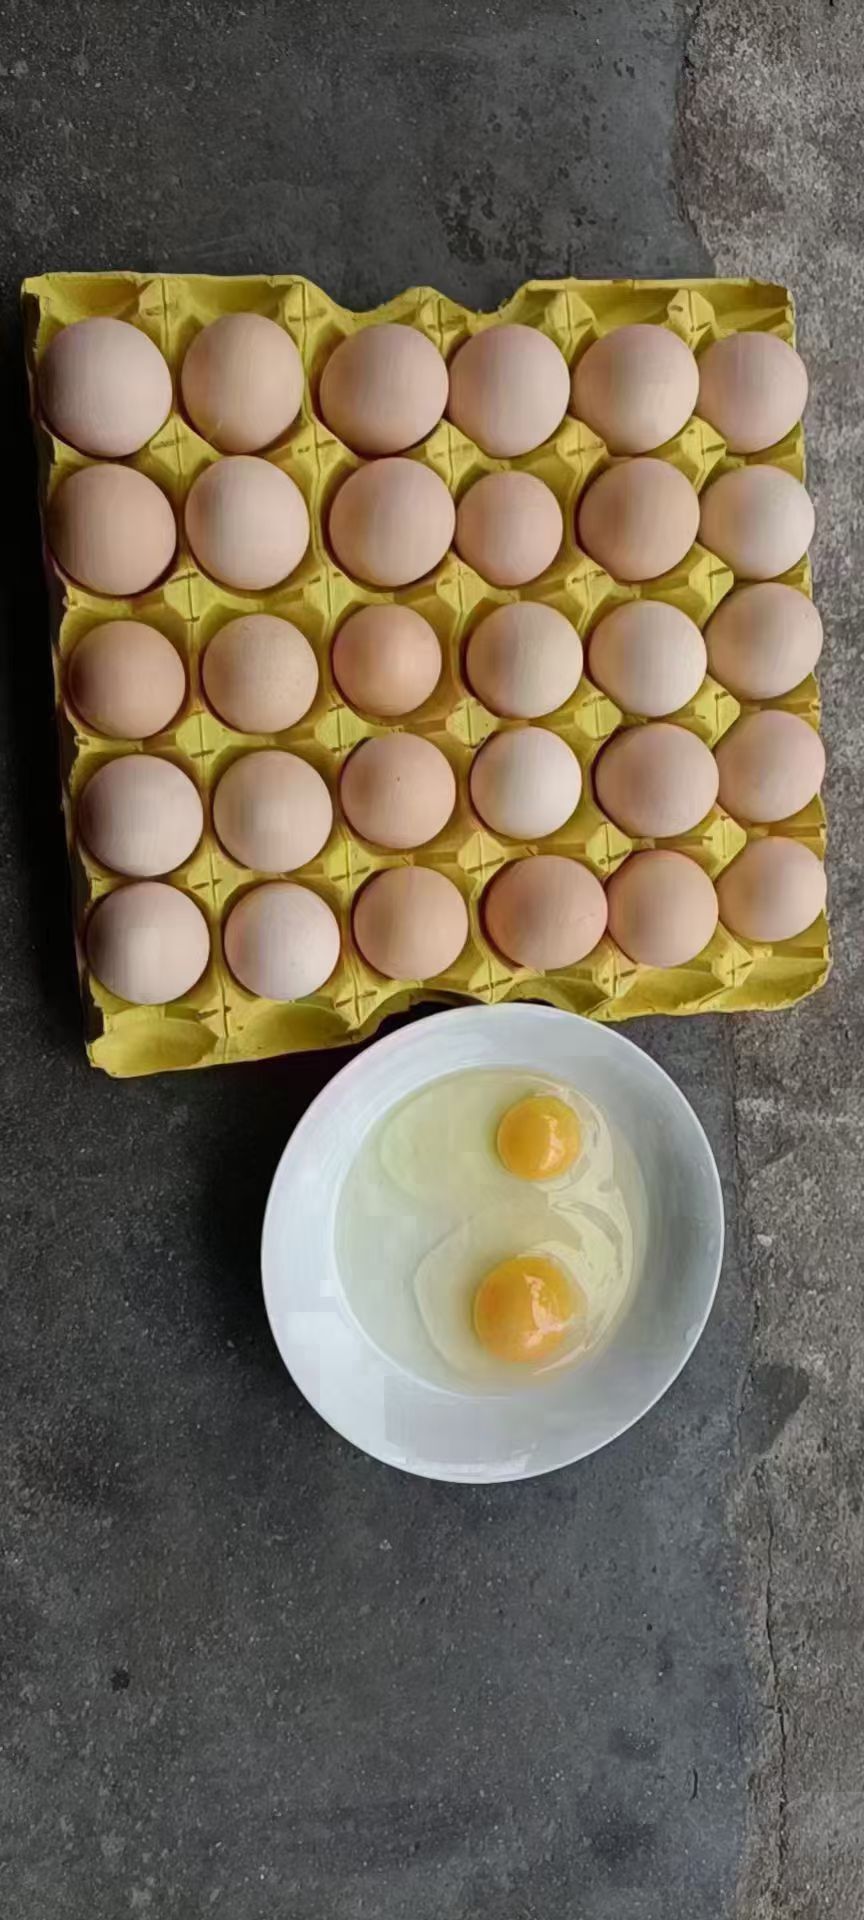 采购量 询价时间 hn1****37 鸡蛋/乌鸡蛋 中码蛋 绿壳蛋 土鸡蛋 黄心